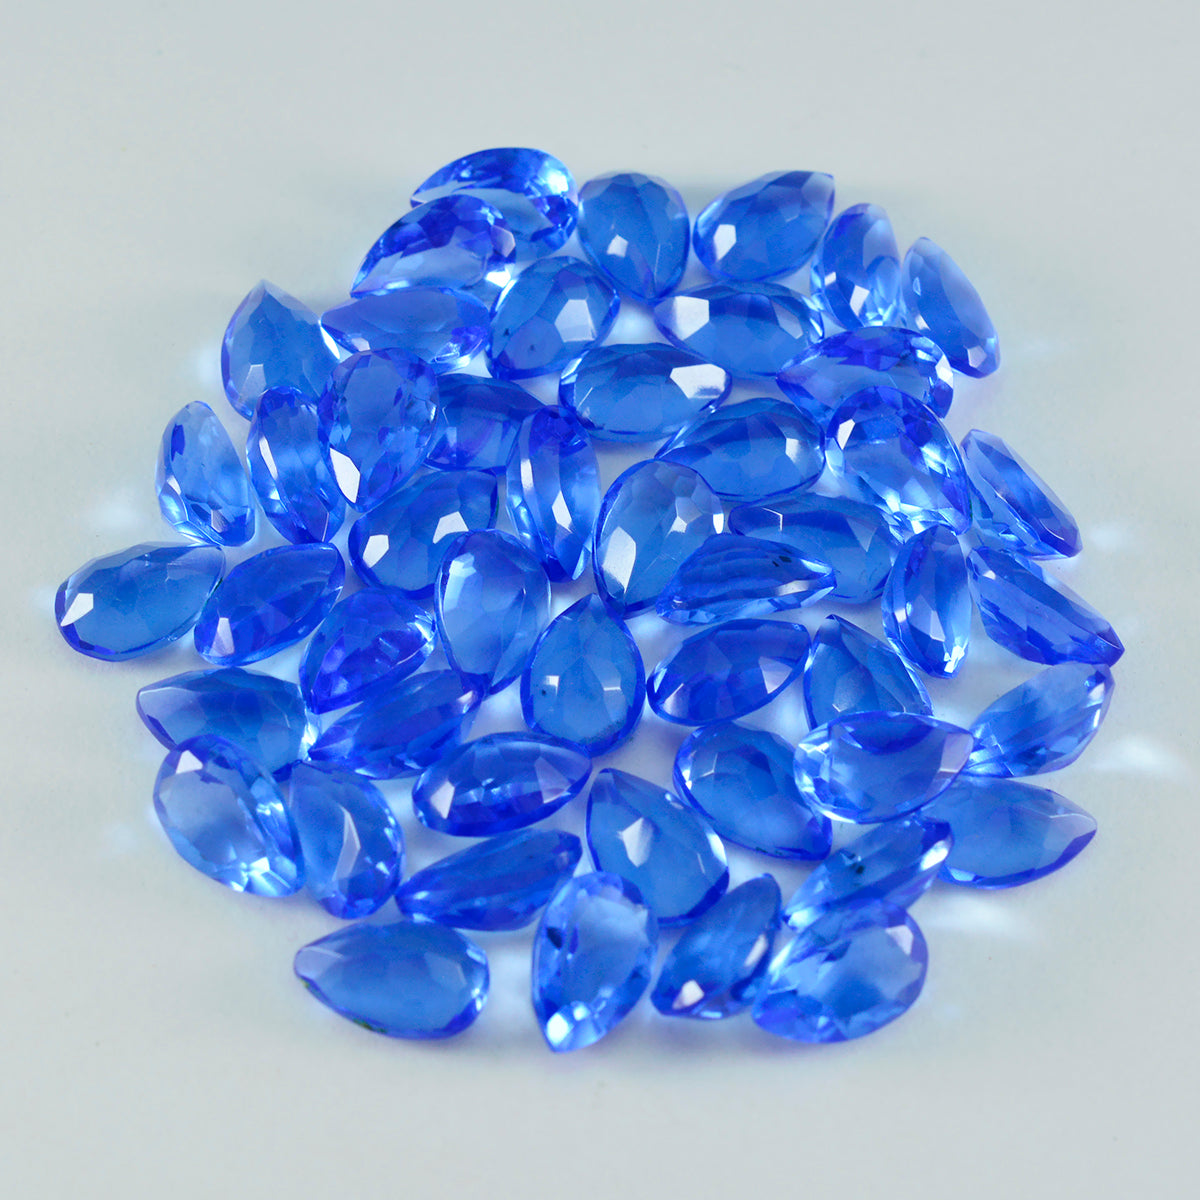 riyogems 1pc ブルー サファイア CZ ファセット 4x6 mm 洋ナシ形の見栄えの良い品質の宝石